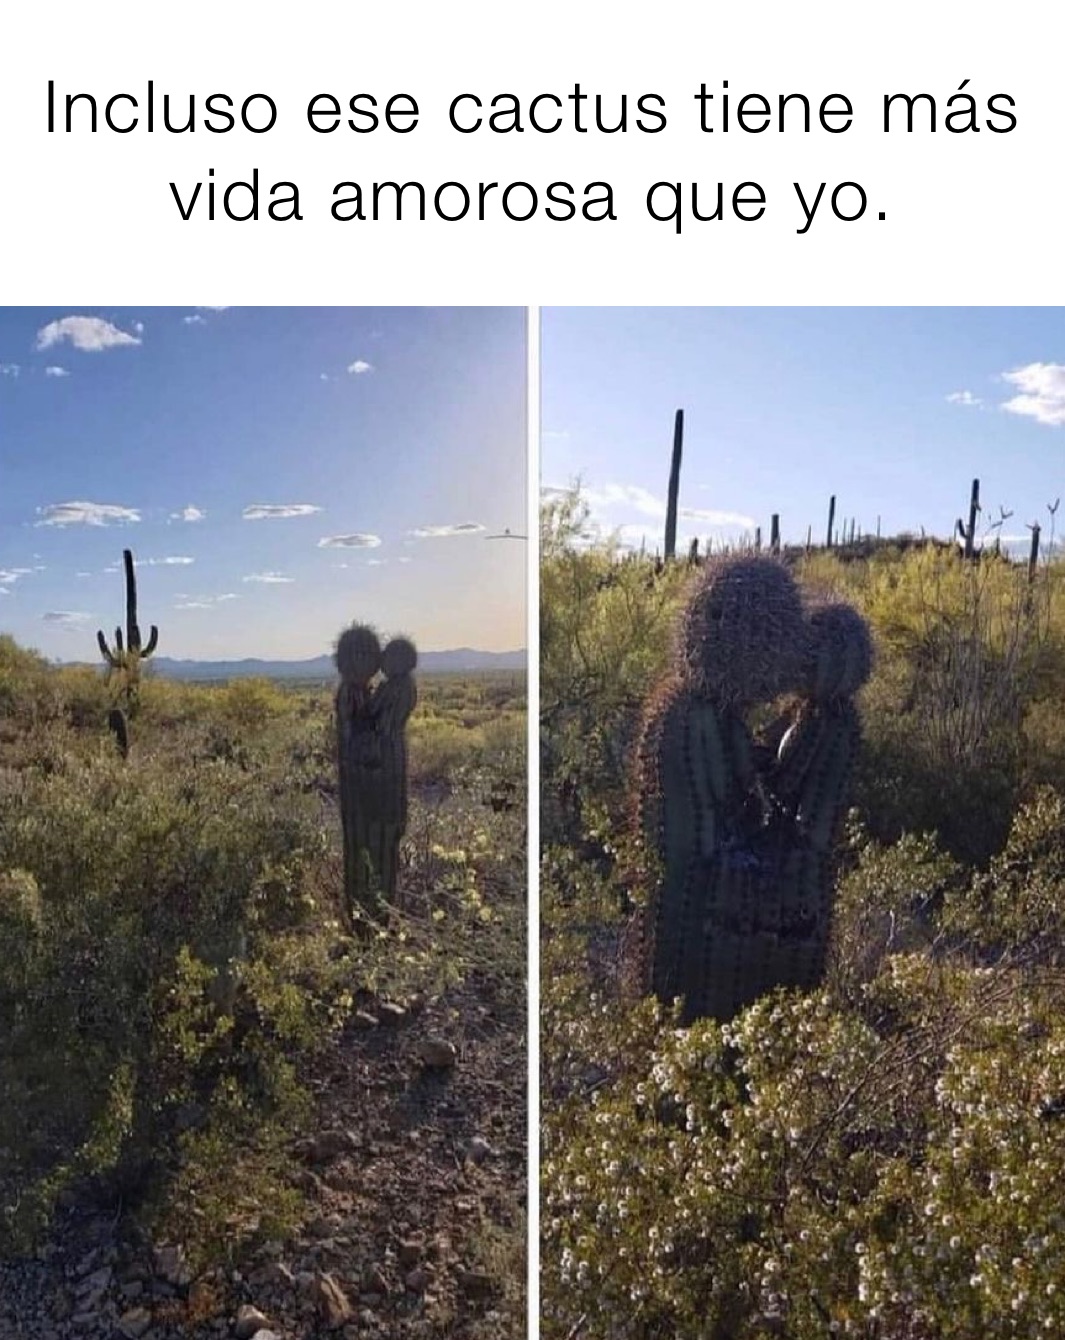 Incluso ese cactus tiene más vida amorosa que yo.